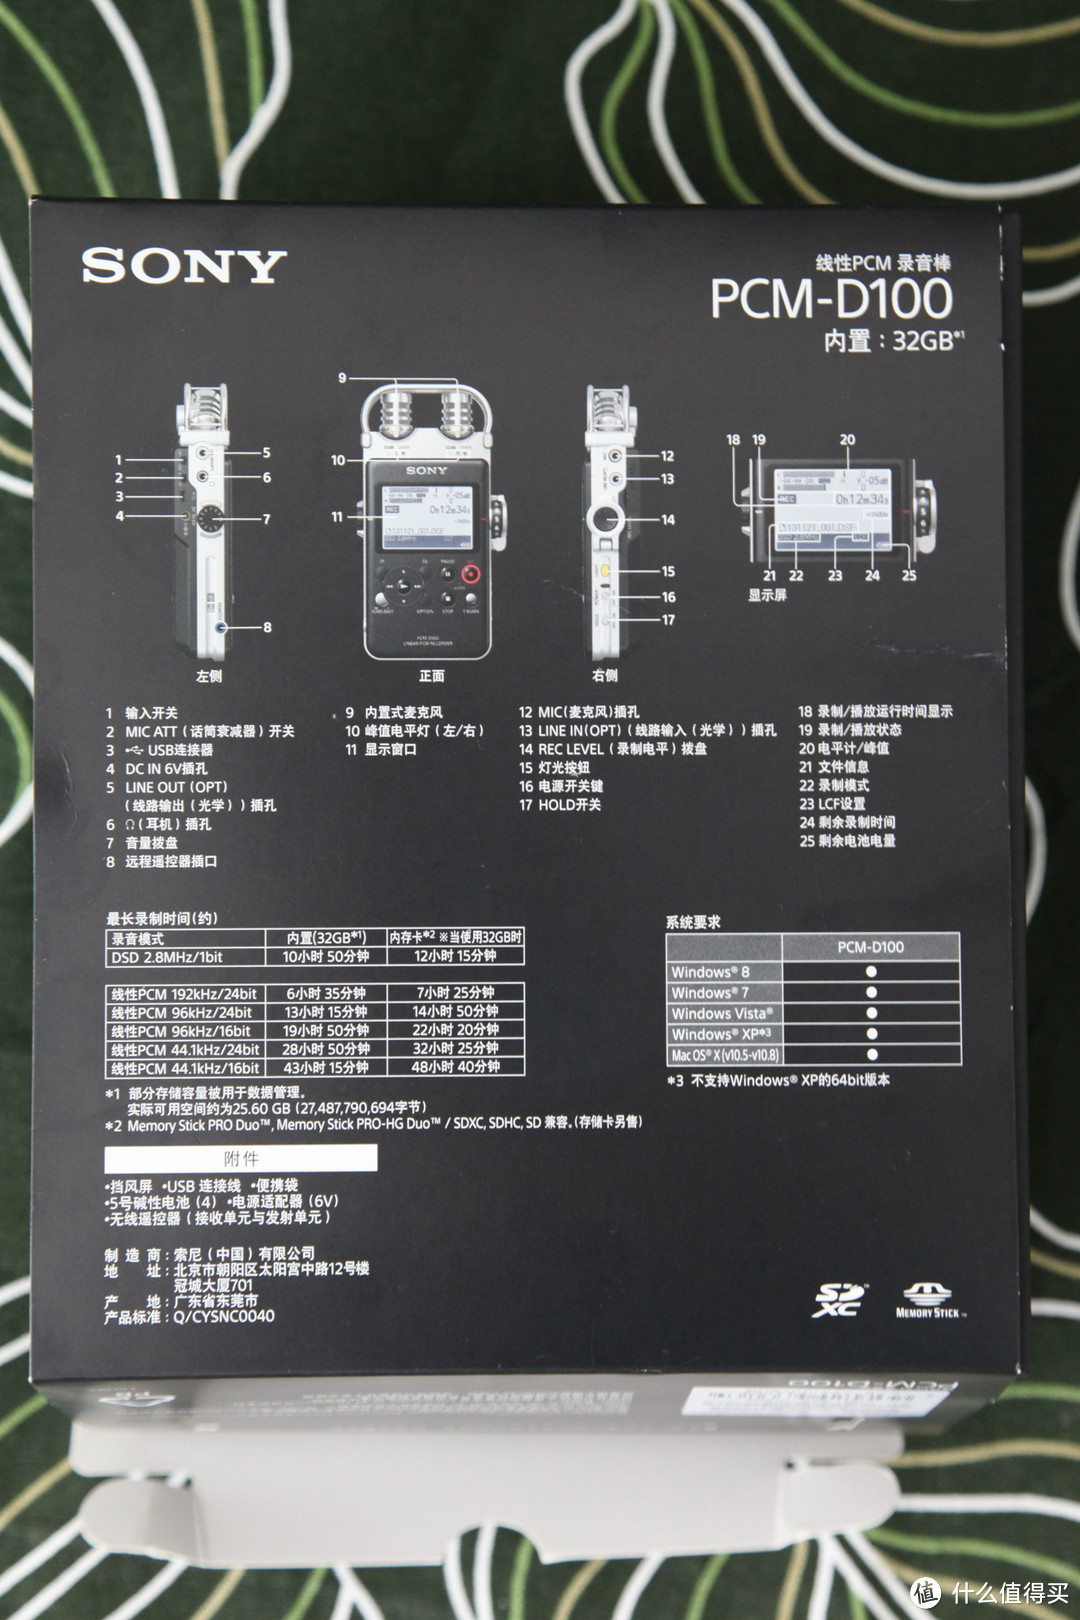 寻找WALKMAN的味道——索尼 PCM-D100 专业线性录音棒评测